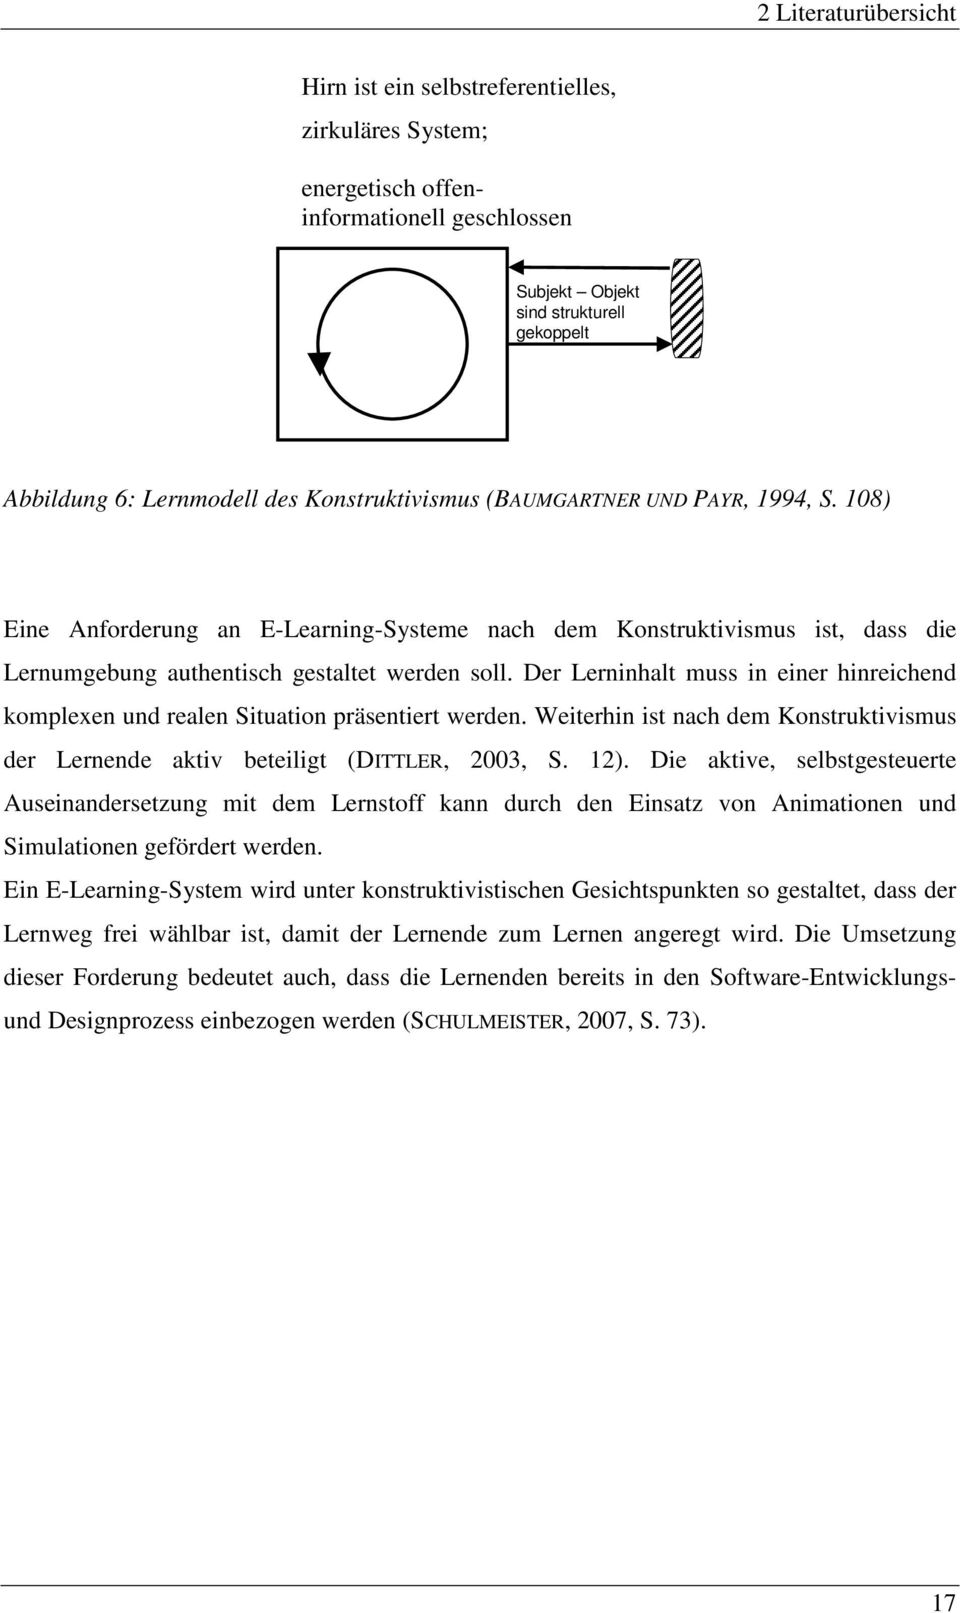 Der Lerninhalt muss in einer hinreichend komplexen und realen Situation präsentiert werden. Weiterhin ist nach dem Konstruktivismus der Lernende aktiv beteiligt (DITTLER, 2003, S. 12).